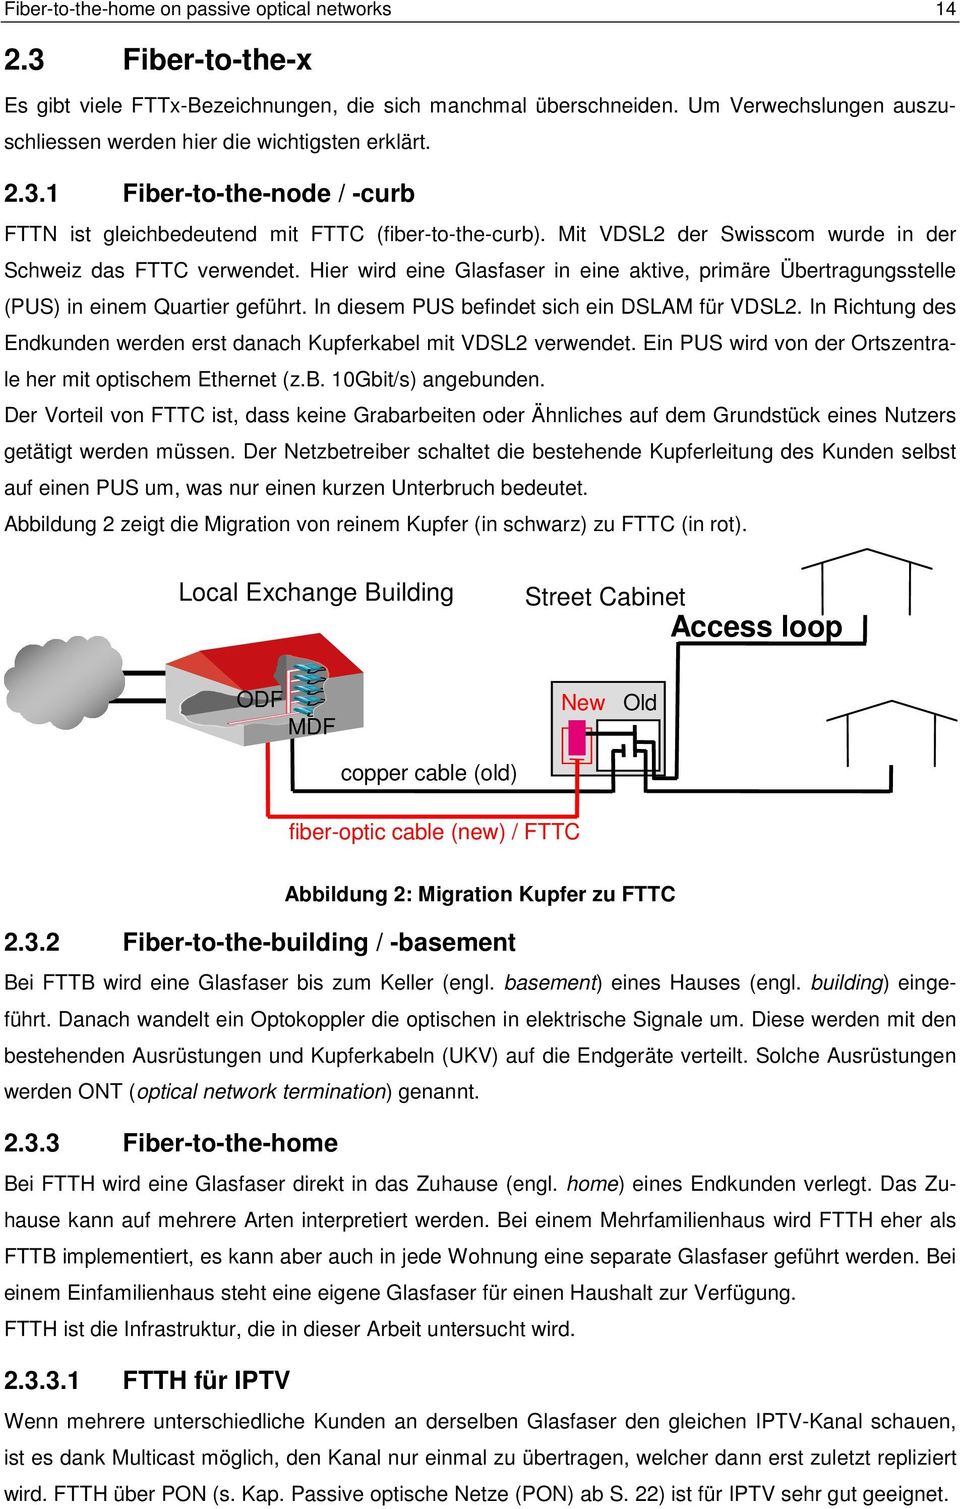 Mit VDSL2 der Swisscom wurde in der Schweiz das FTTC verwendet. Hier wird eine Glasfaser in eine aktive, primäre Übertragungsstelle (PUS) in einem Quartier geführt.